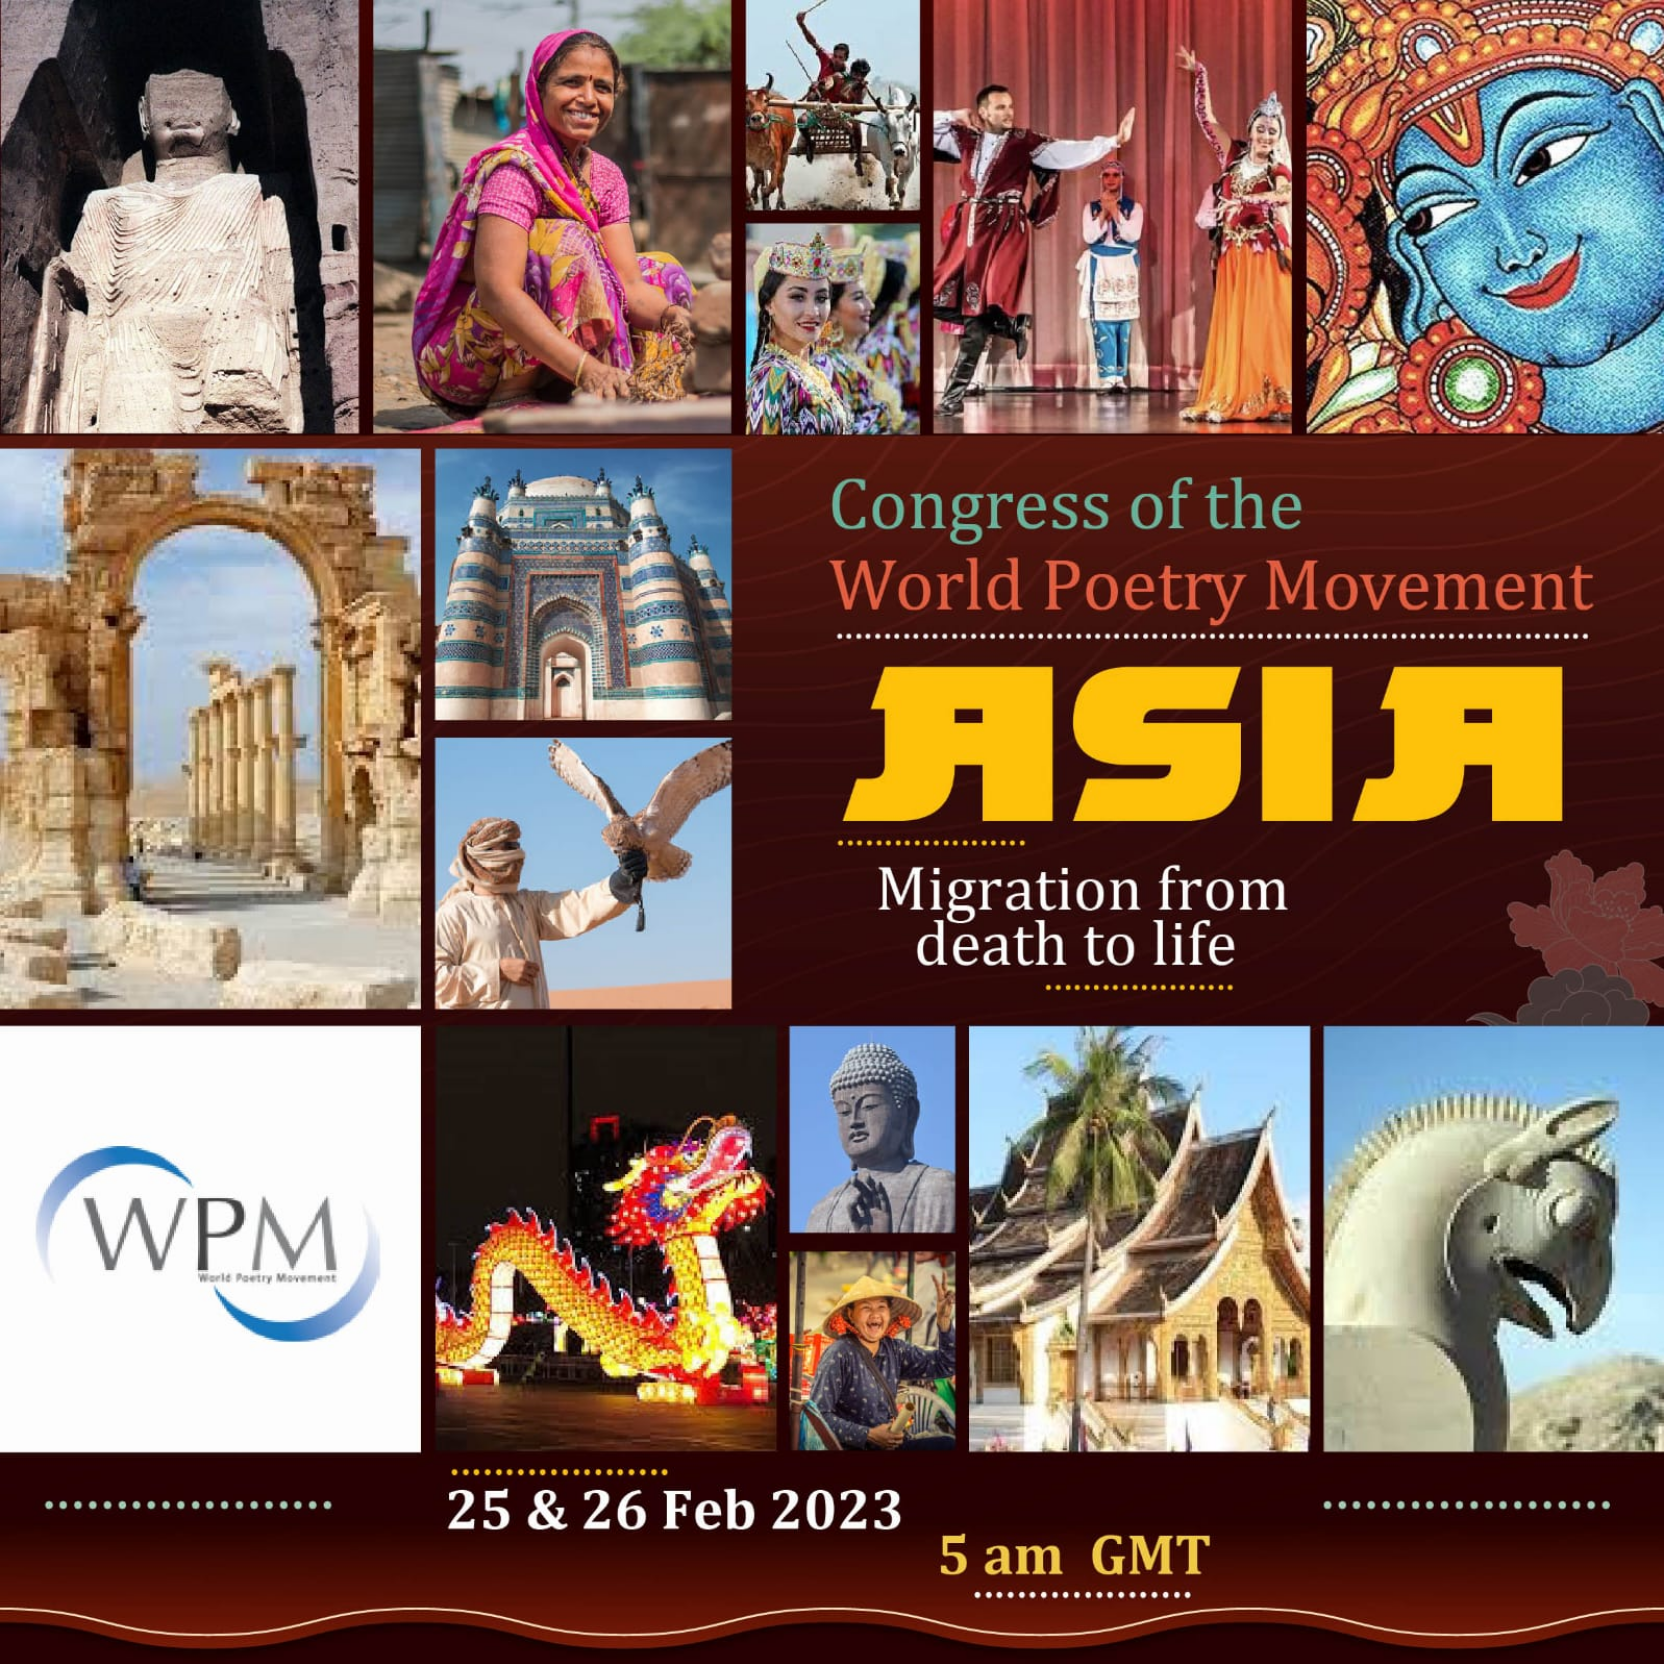 نخستین کنگره آسیایی جنبش جهانی شعر